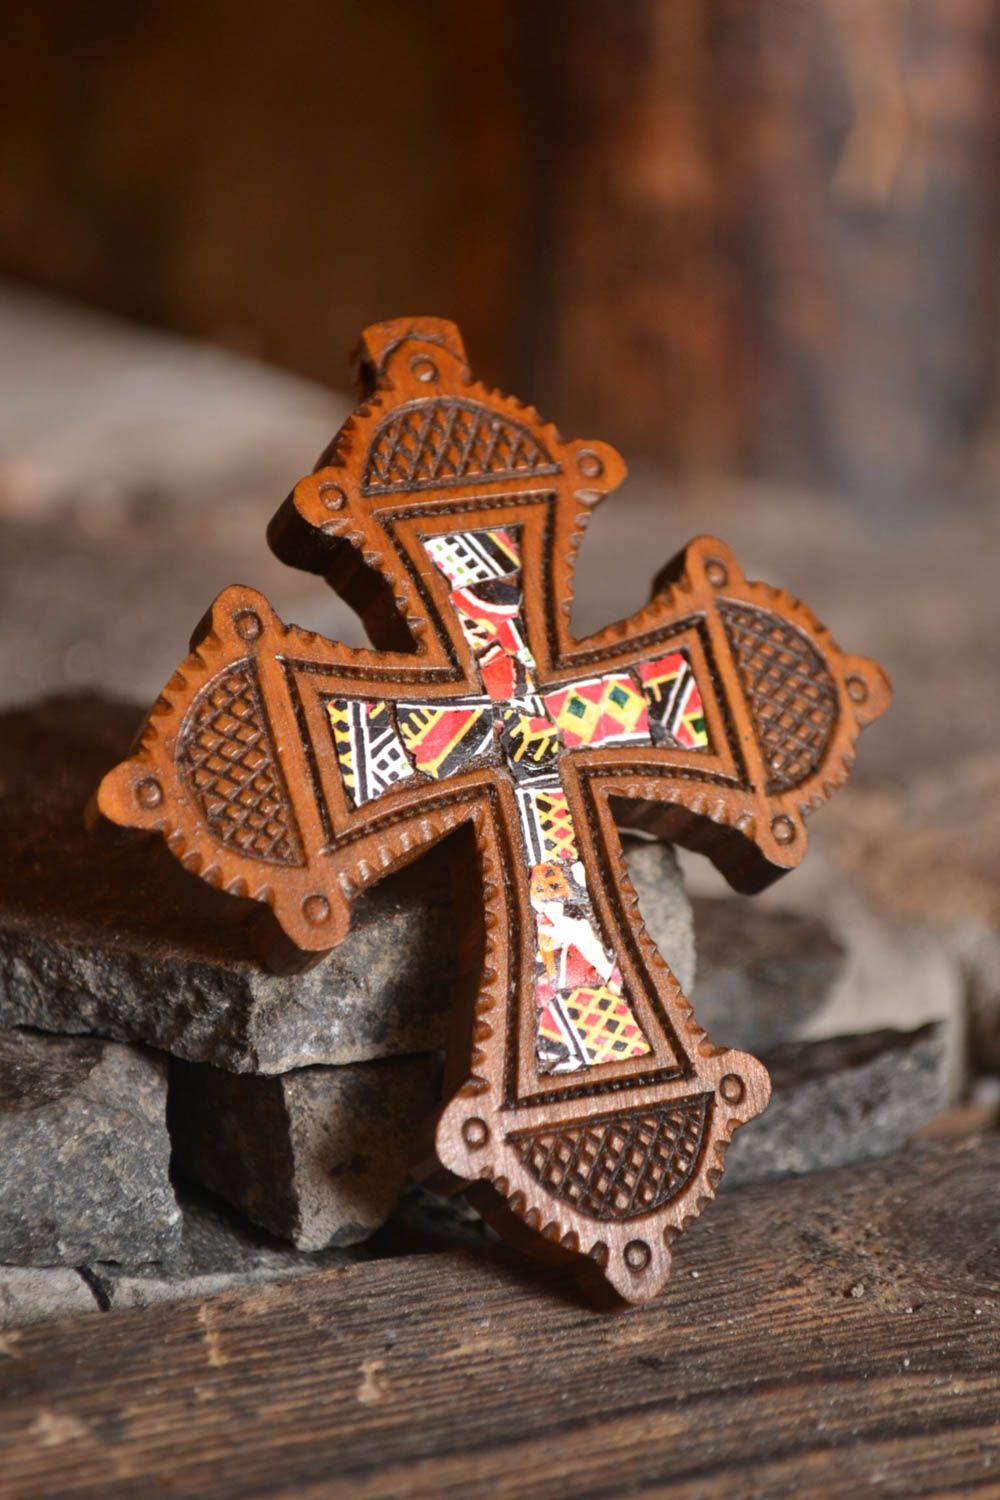 Крест ручной работы нательный крестик из груши оригинальный крестик со скорлупой фото 1